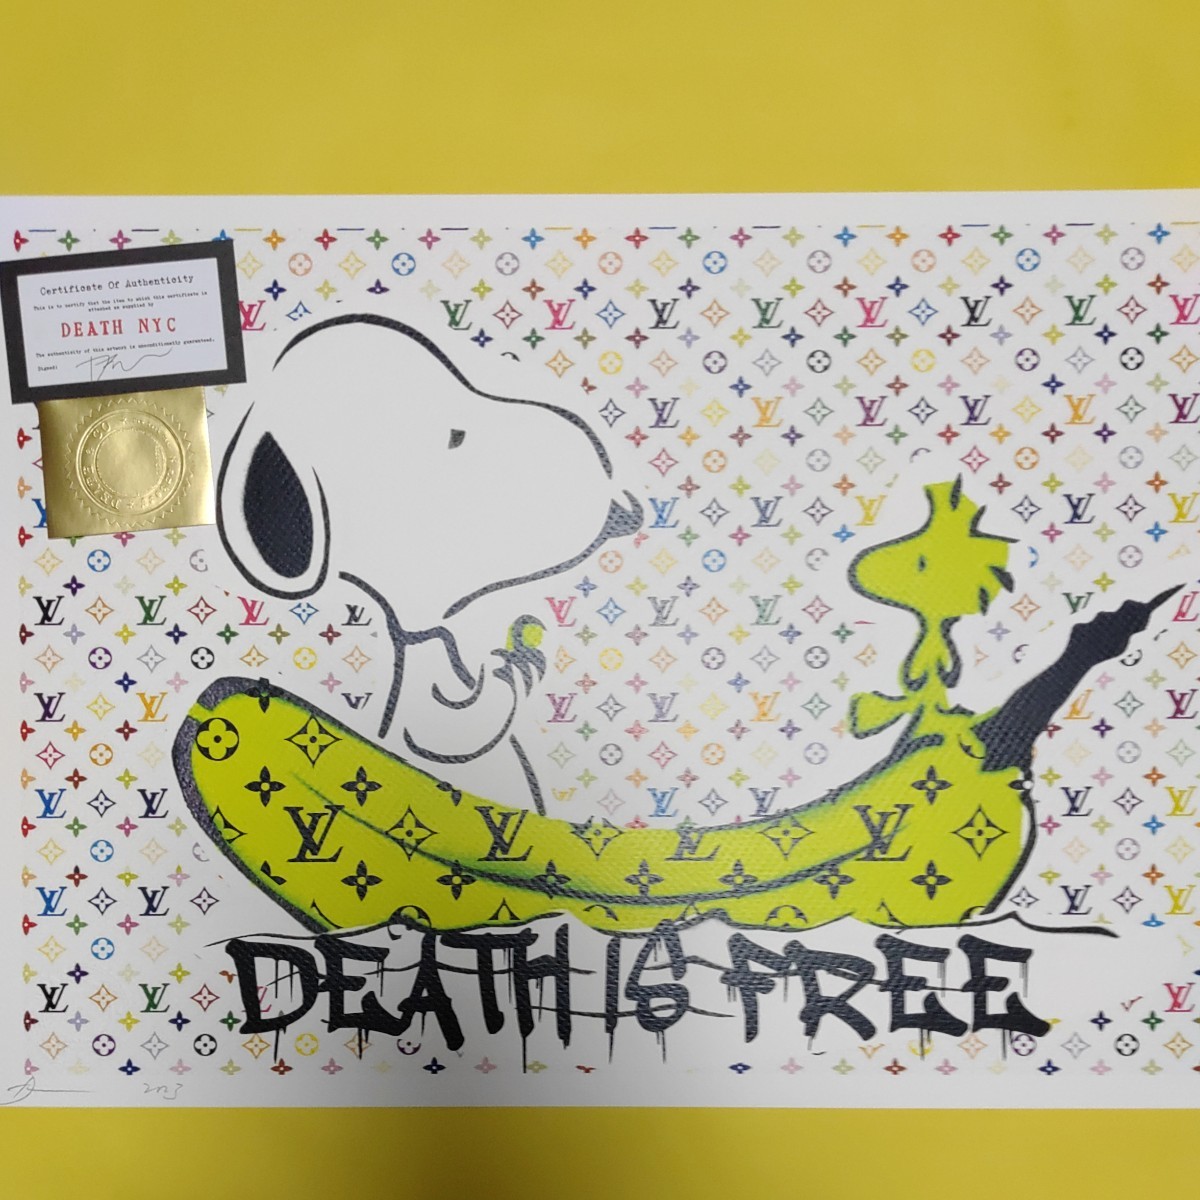 Yahoo!オークション - DEATH NYC 世界限定100枚 アートポスター スヌ